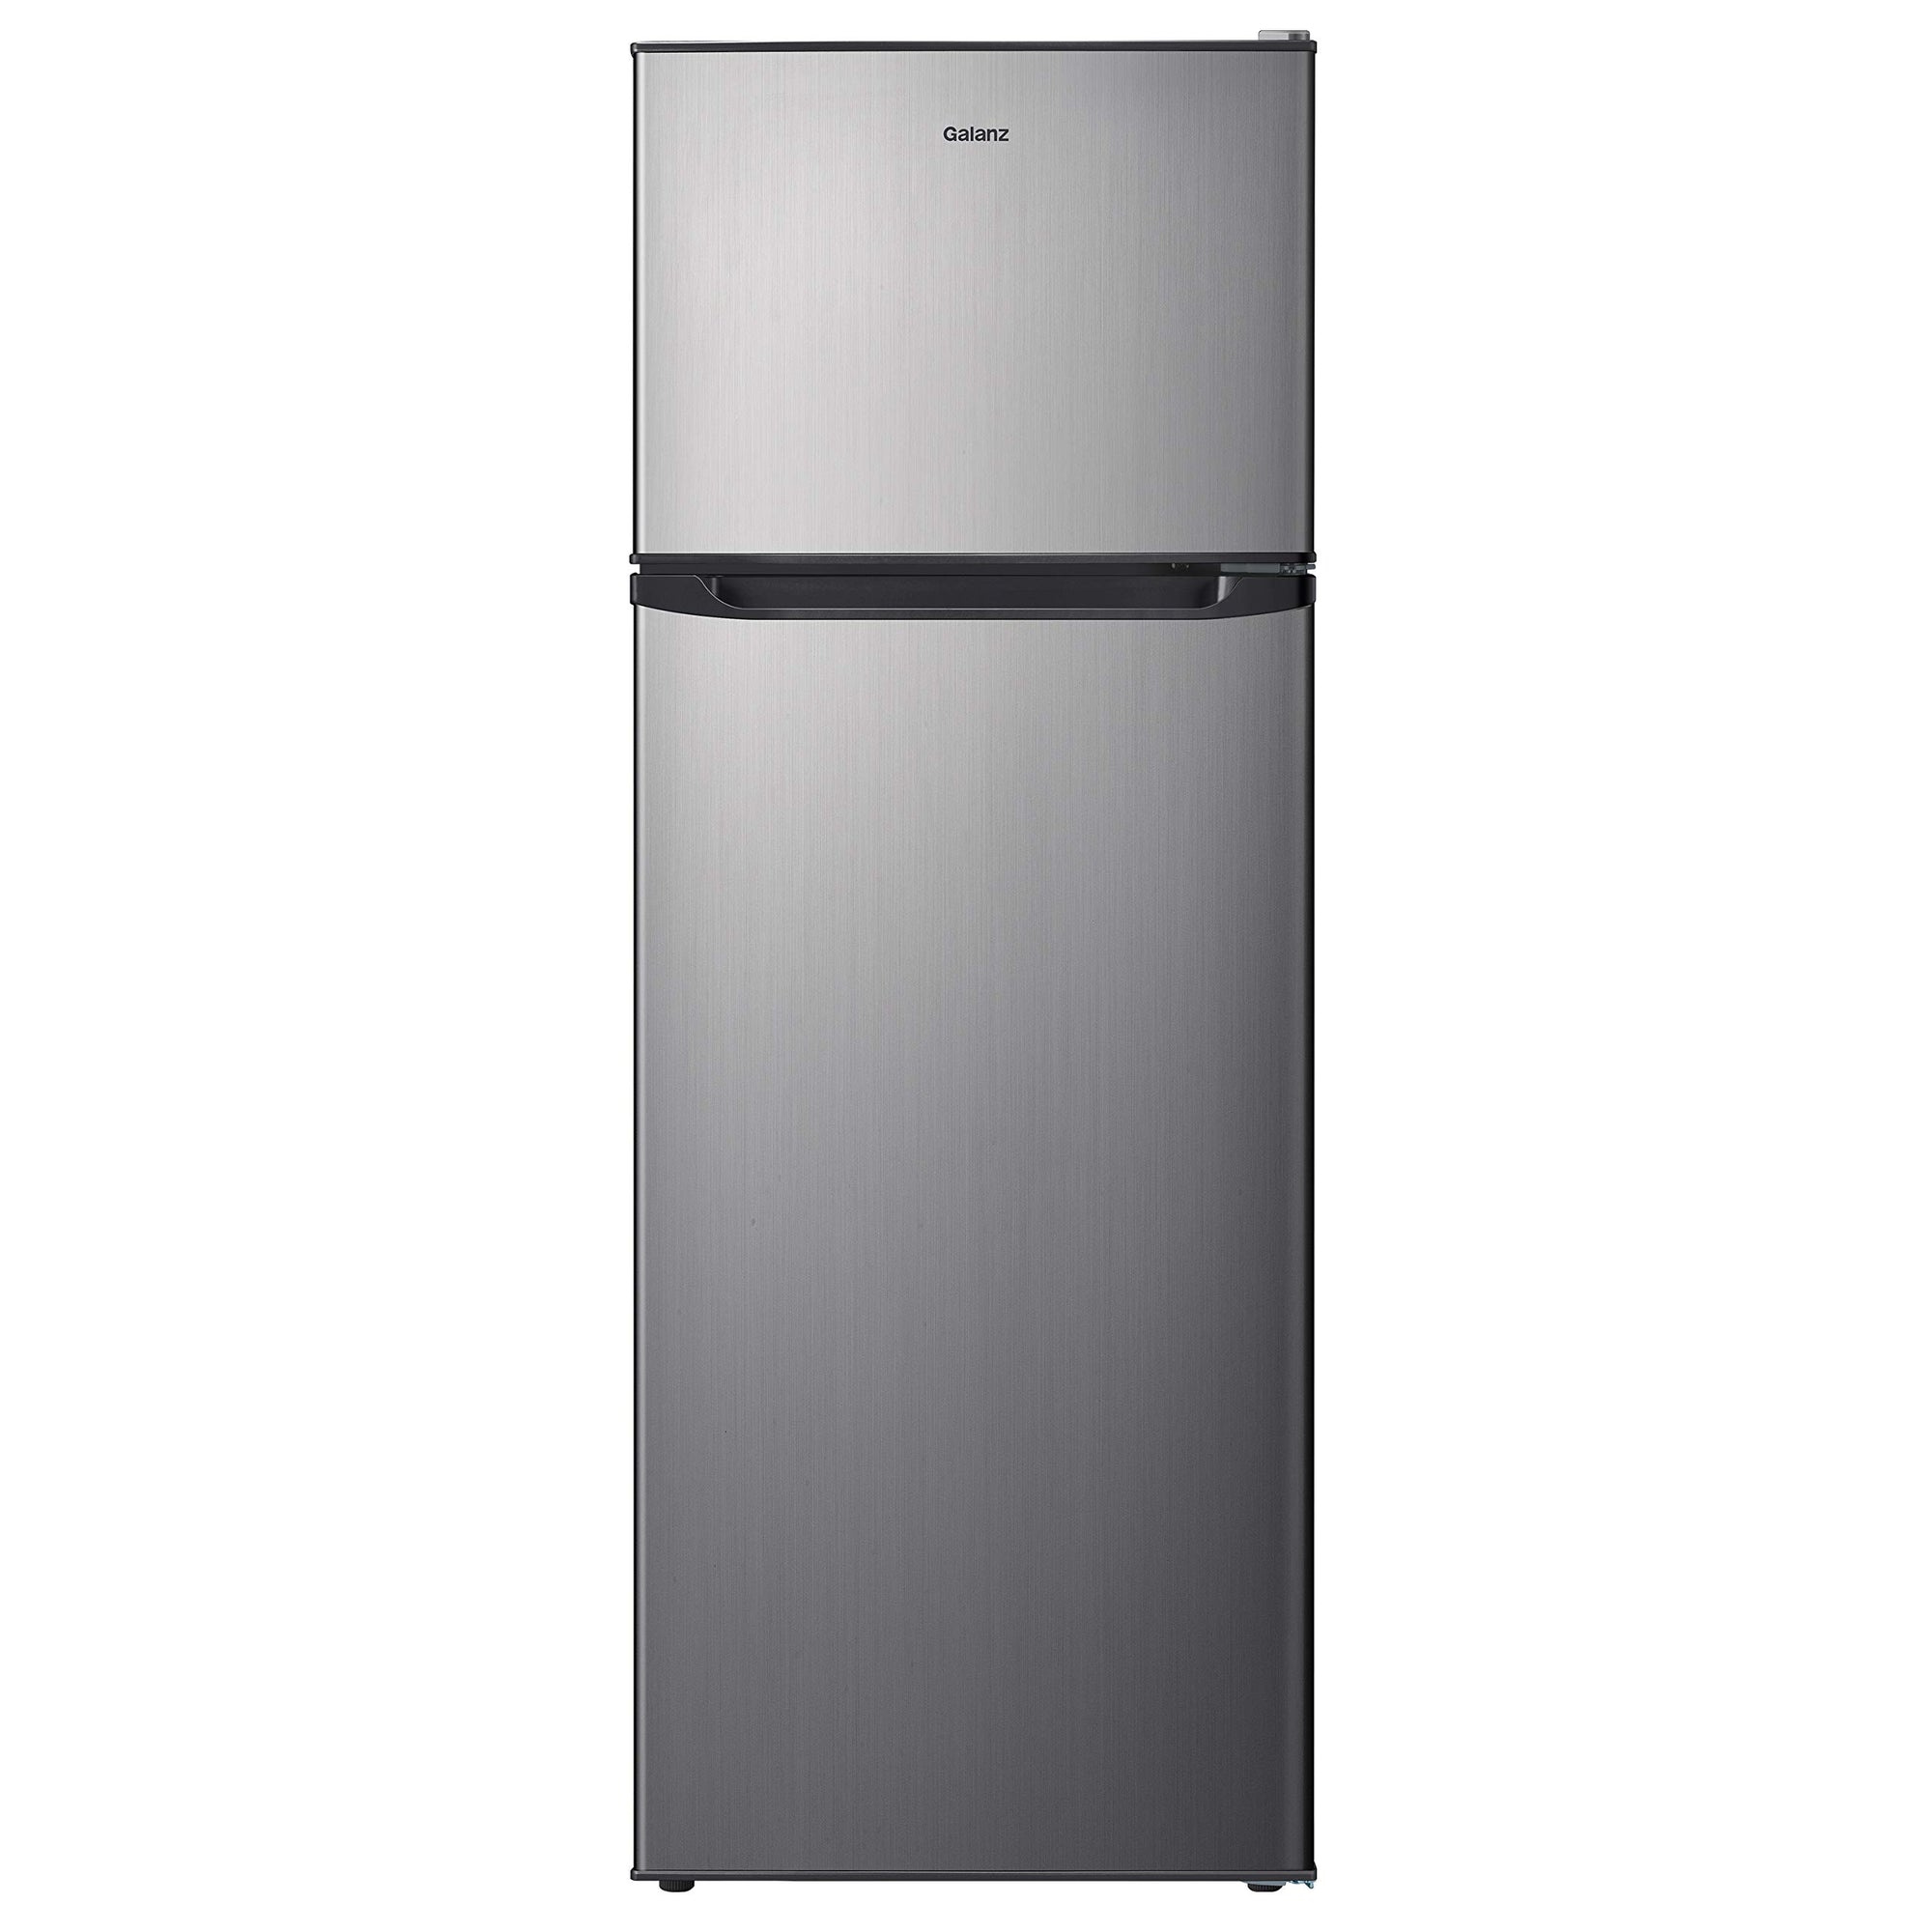 Холодильник Galanz GLR12TS5F, двухдверный холодильник, регулируемый электрический термостат с верхним морозильным отделением, 12,0 куб. футов, нержавеющая сталь, 12